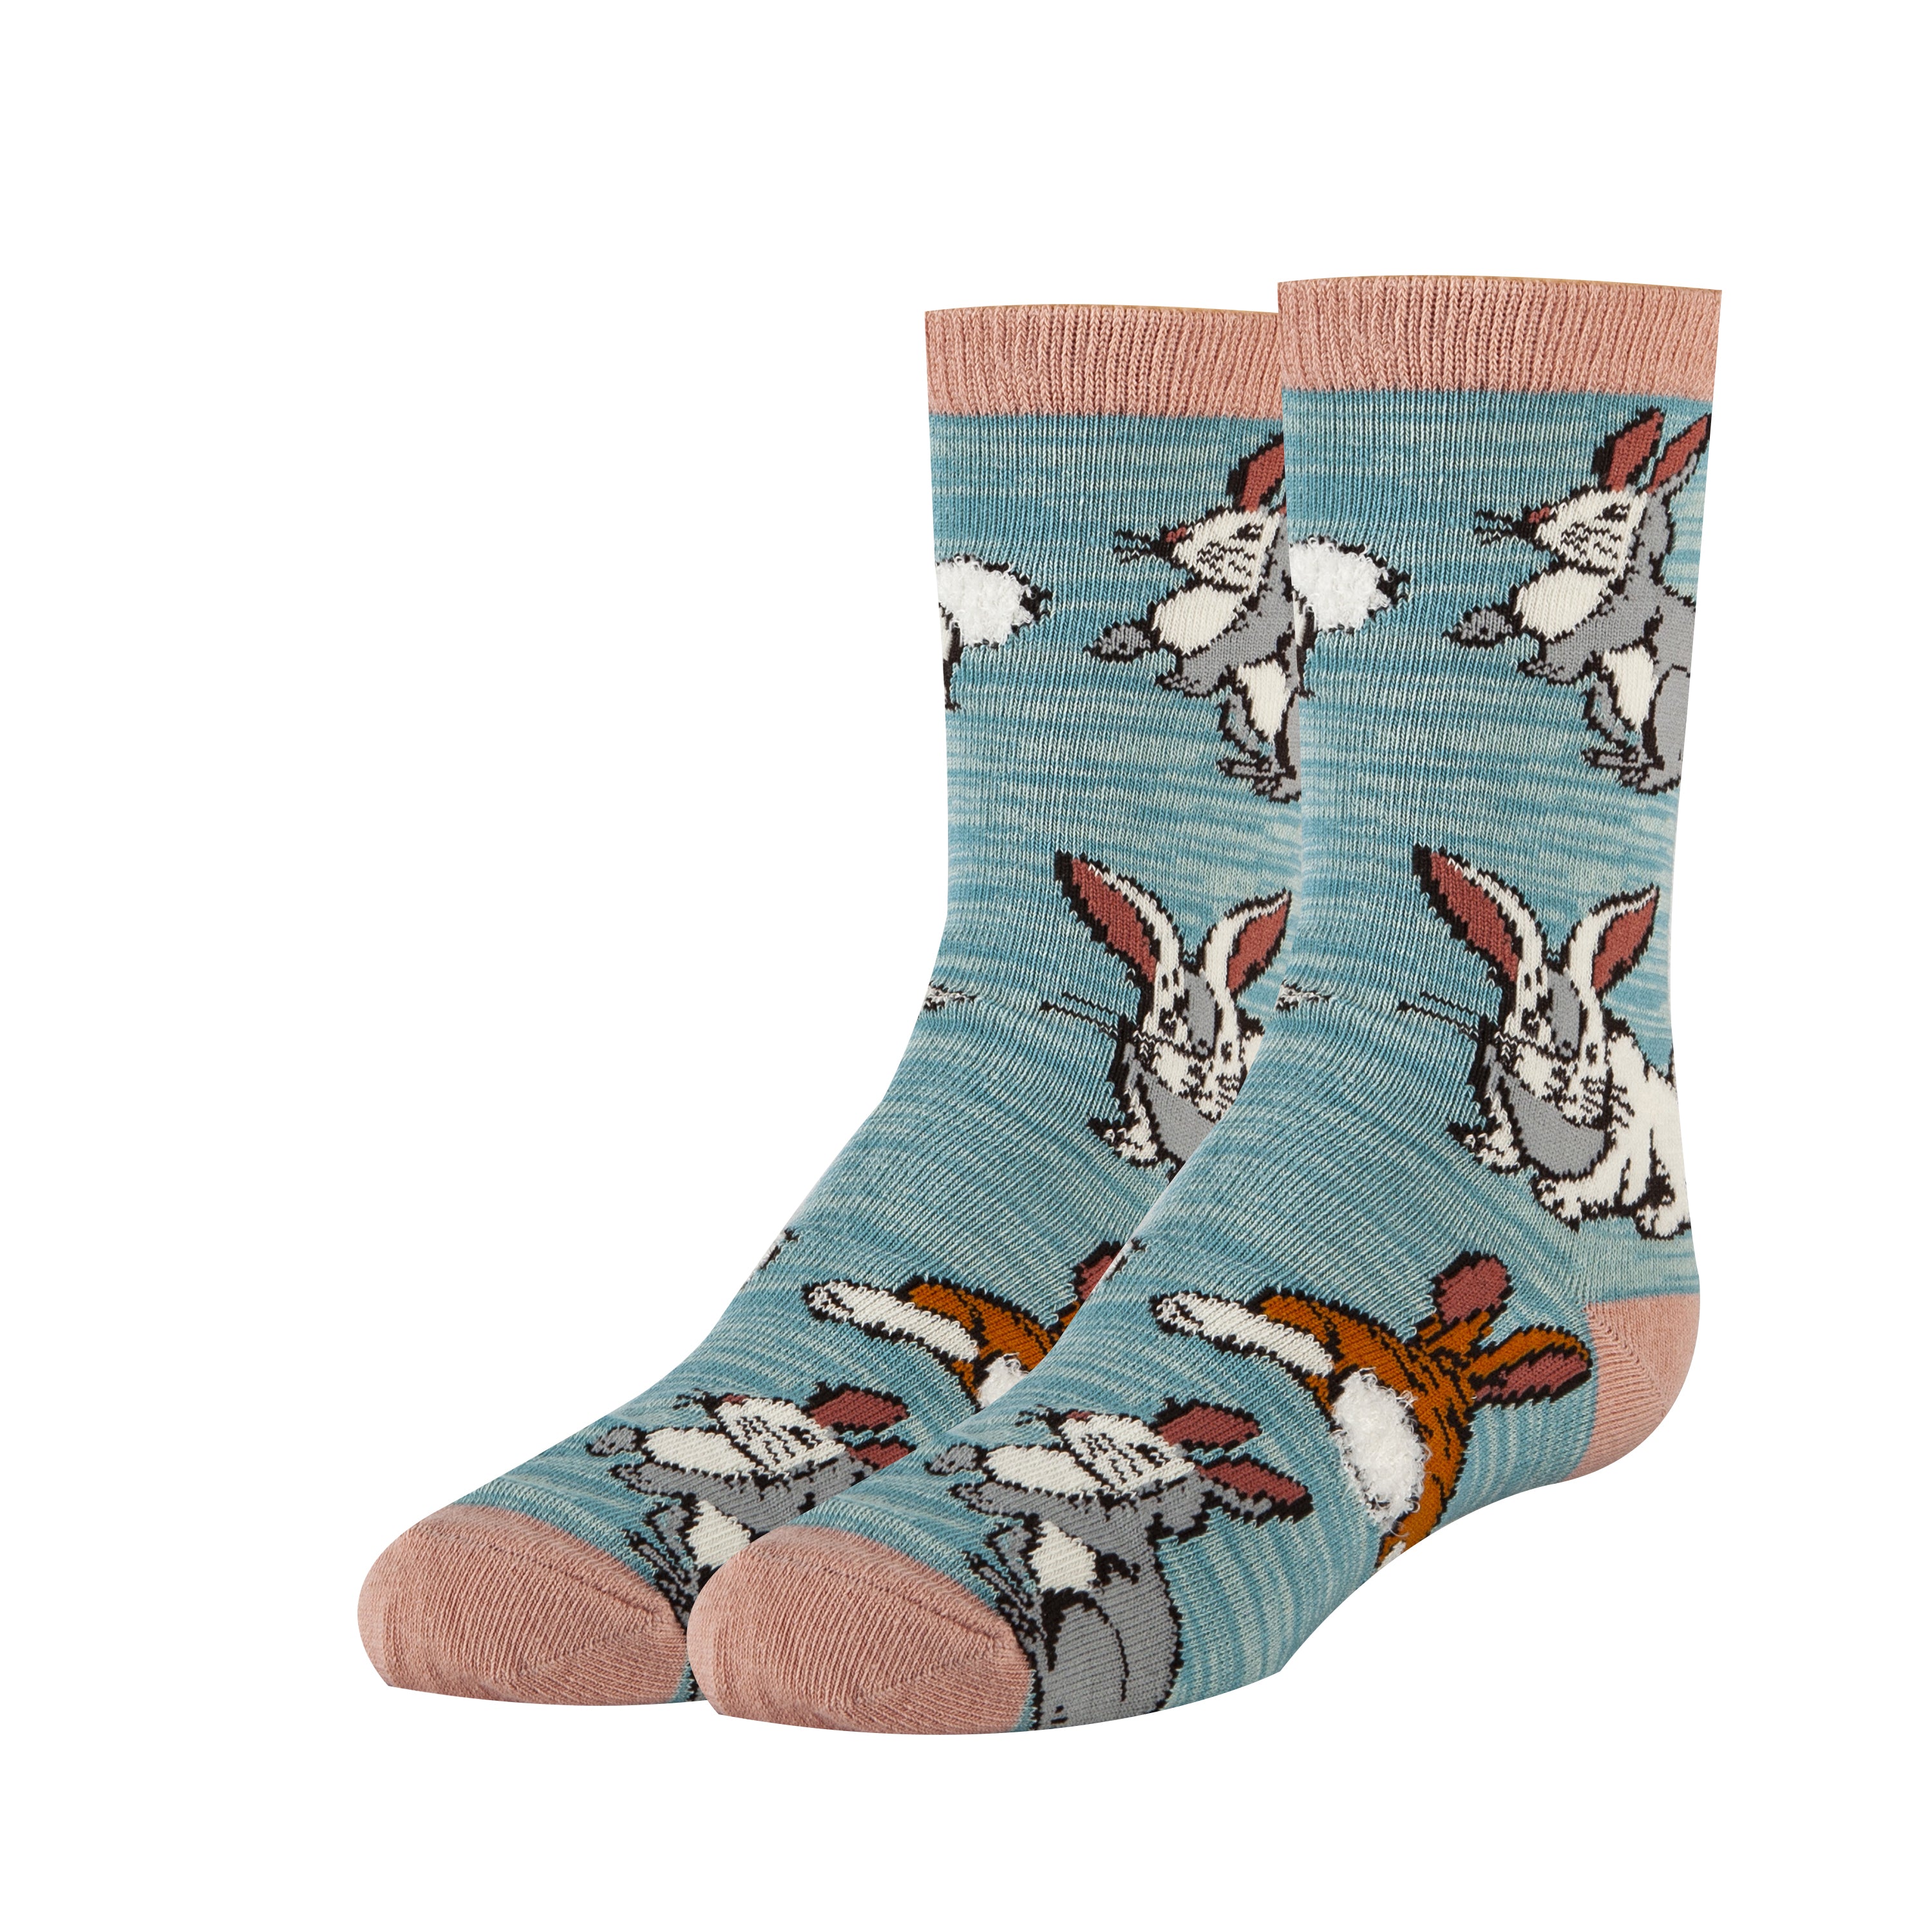 Bunny Hop Socks | Novelty Crew Socks for Kids